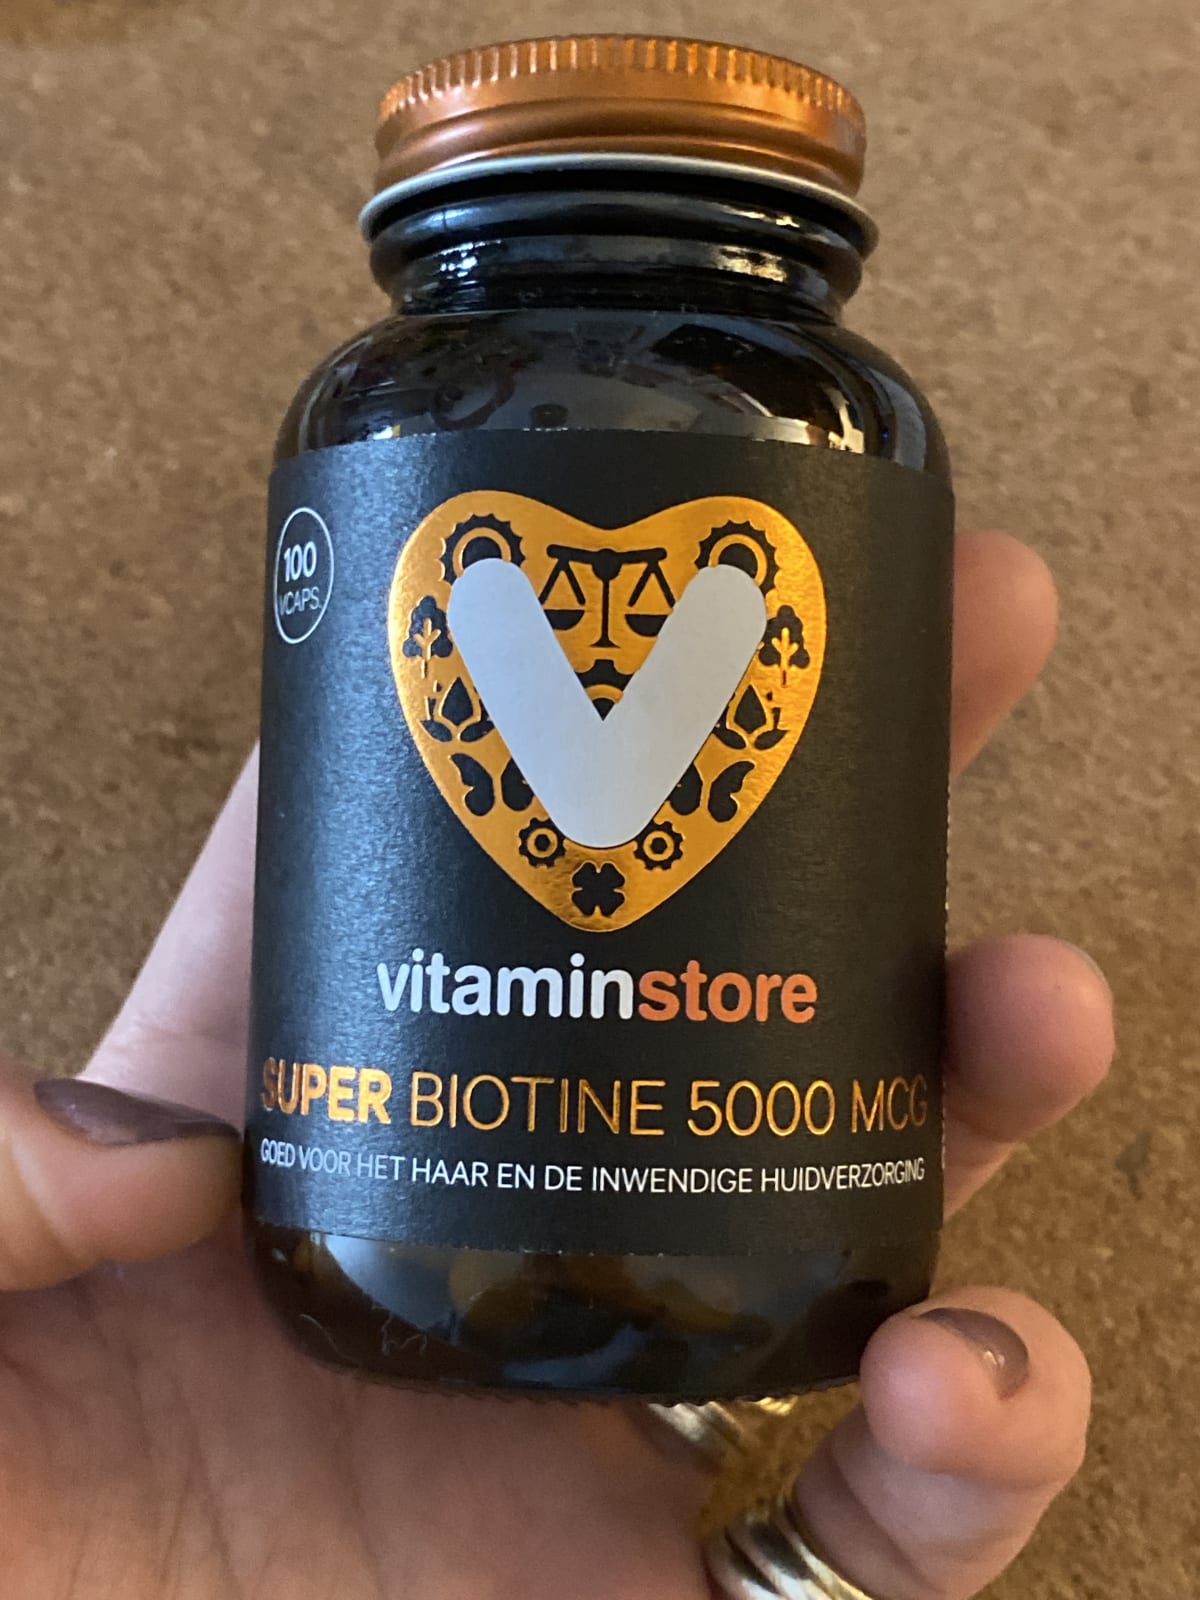 Super Biotine 5000 mcg (biotin)-100 vegicaps - review image